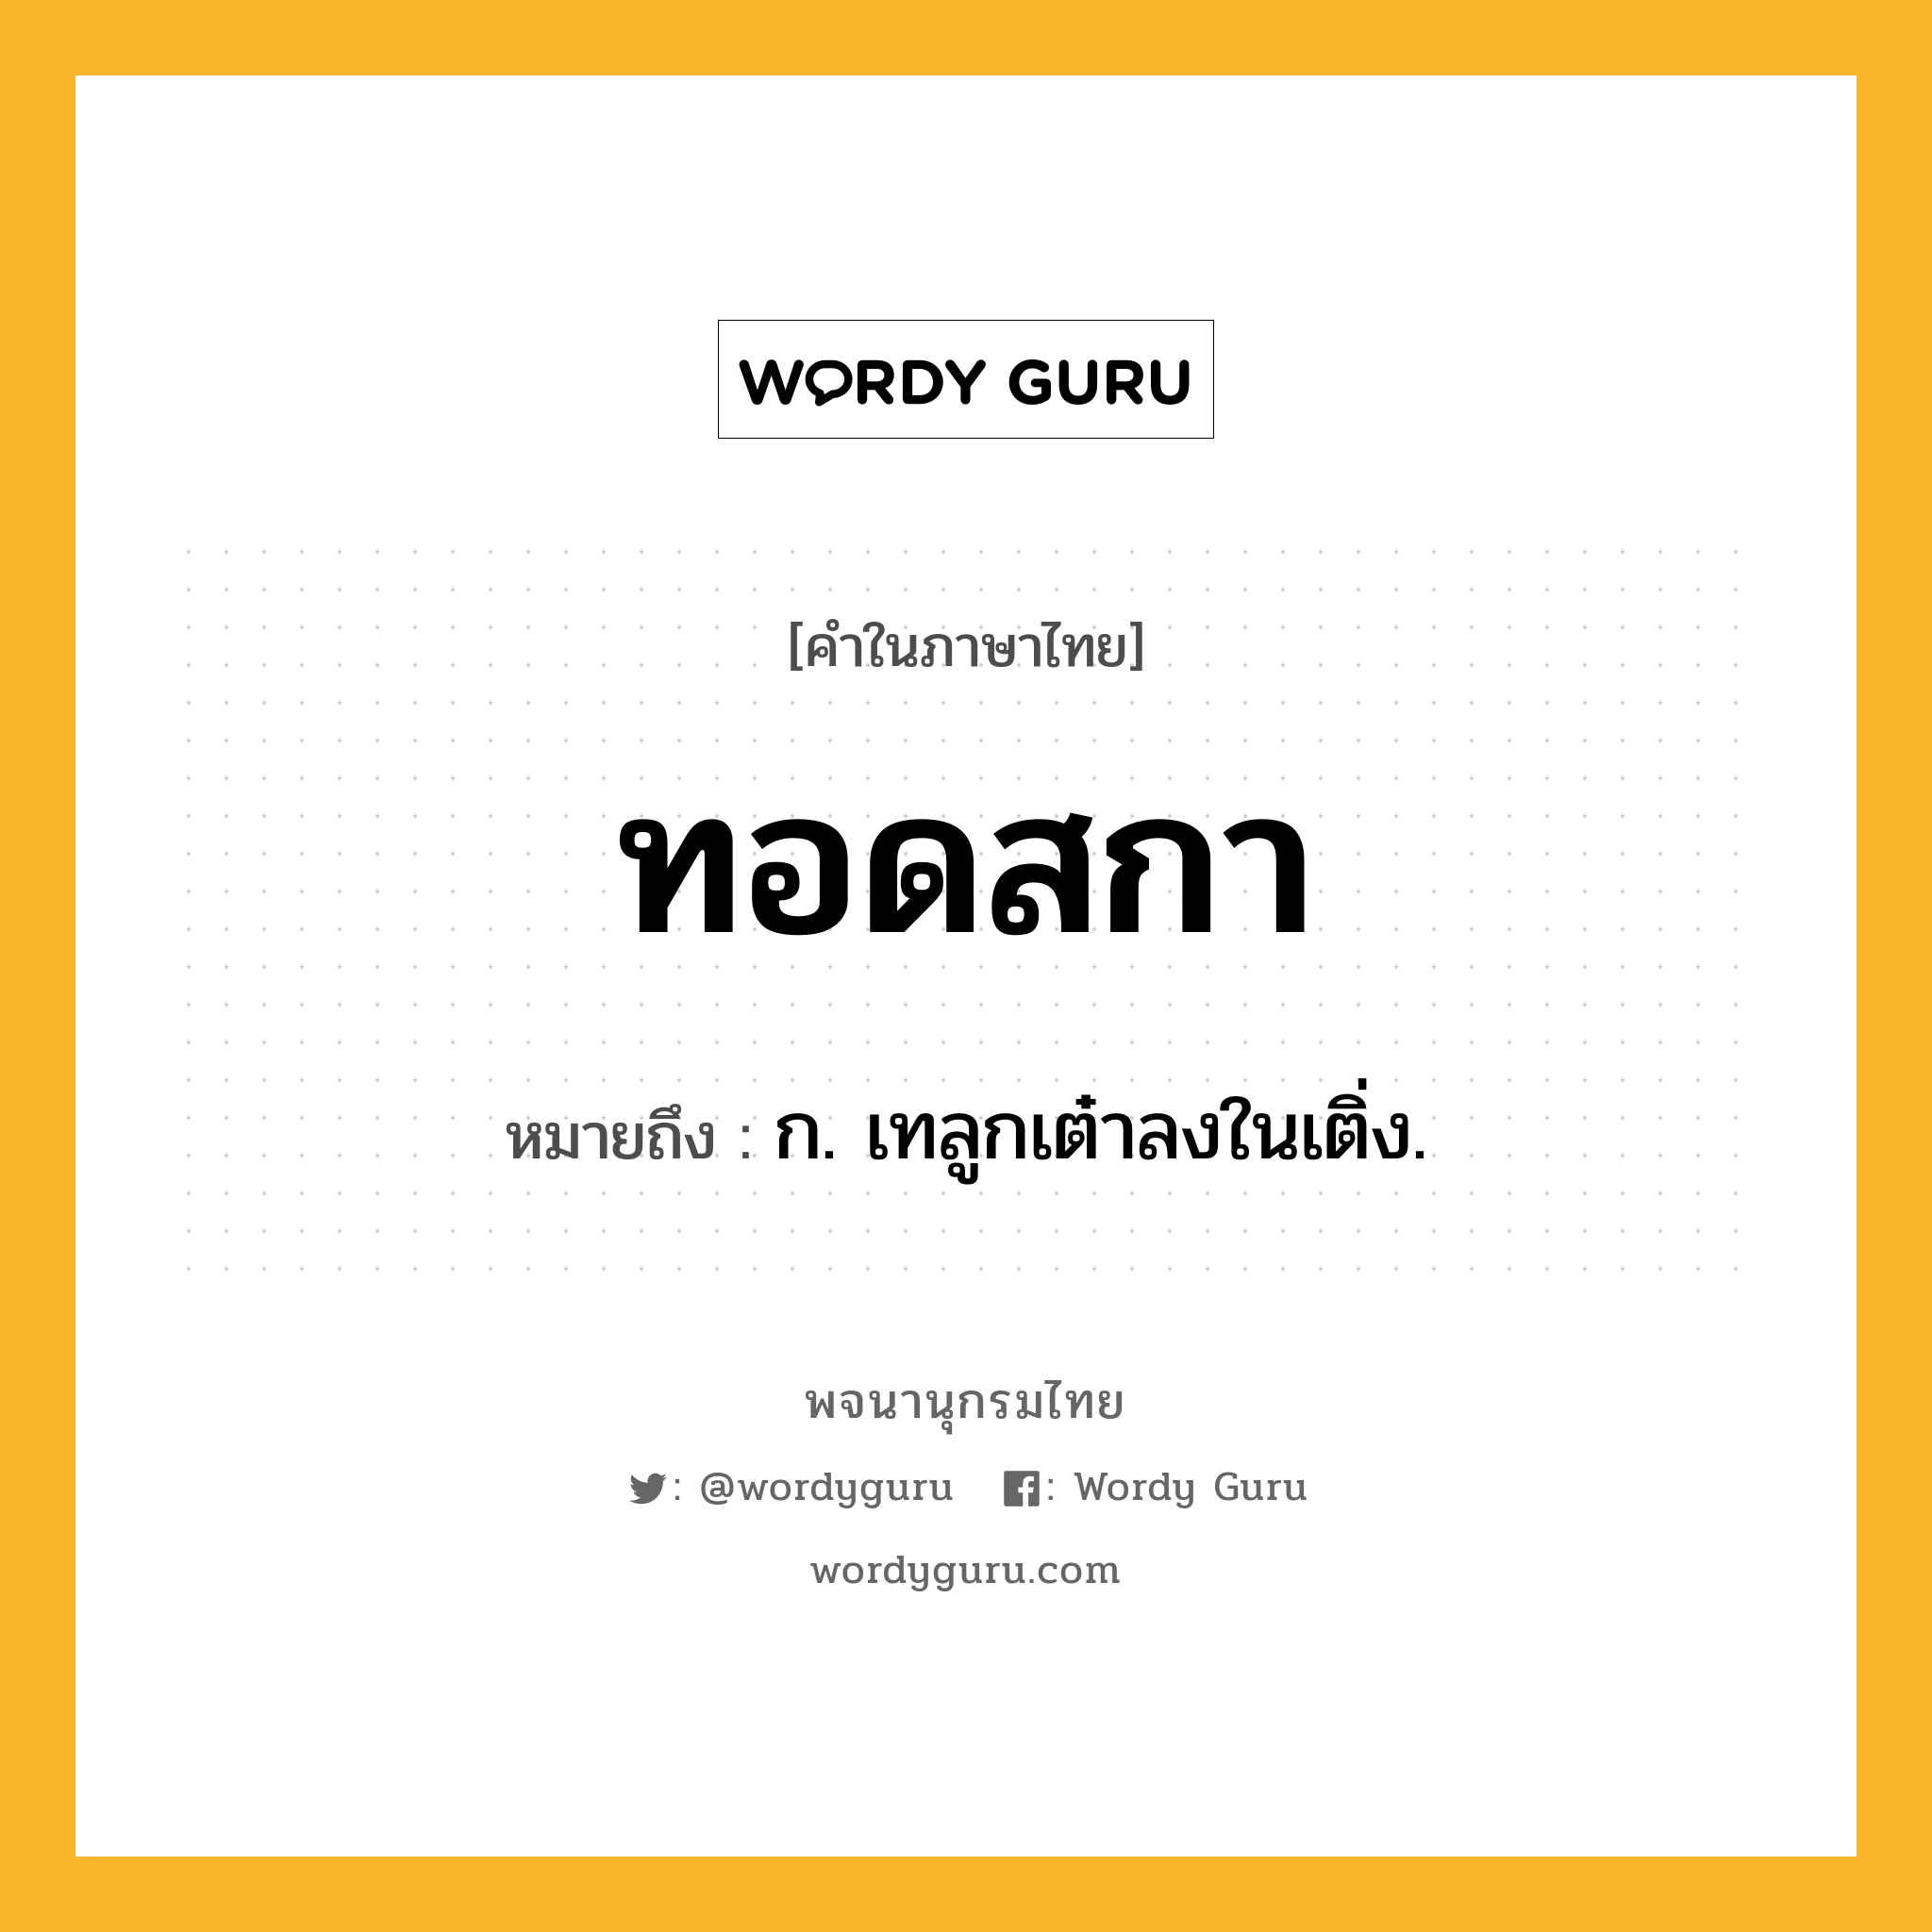 ทอดสกา หมายถึงอะไร?, คำในภาษาไทย ทอดสกา หมายถึง ก. เทลูกเต๋าลงในเติ่ง.